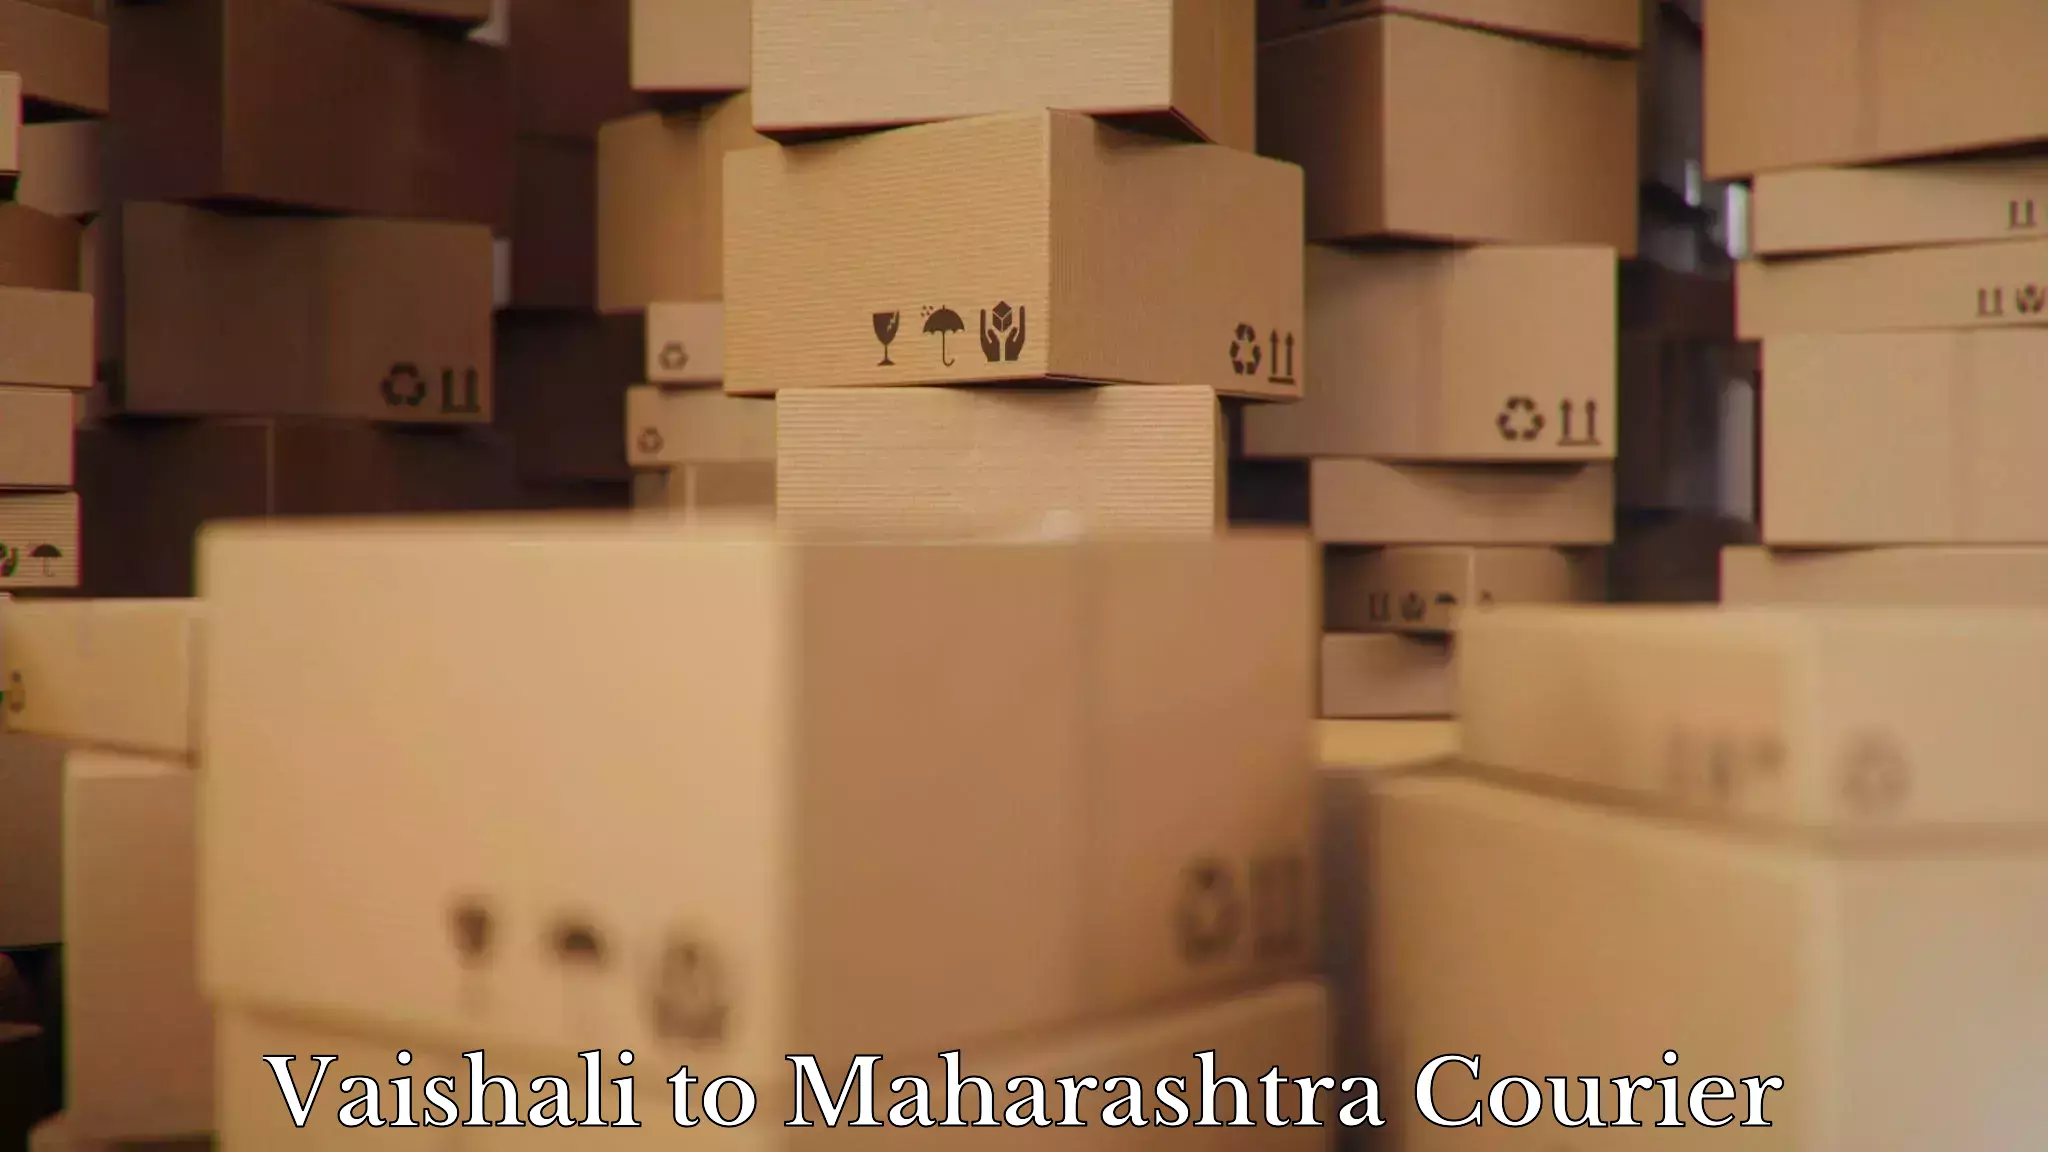 Furniture shipping services Vaishali to Ballarpur